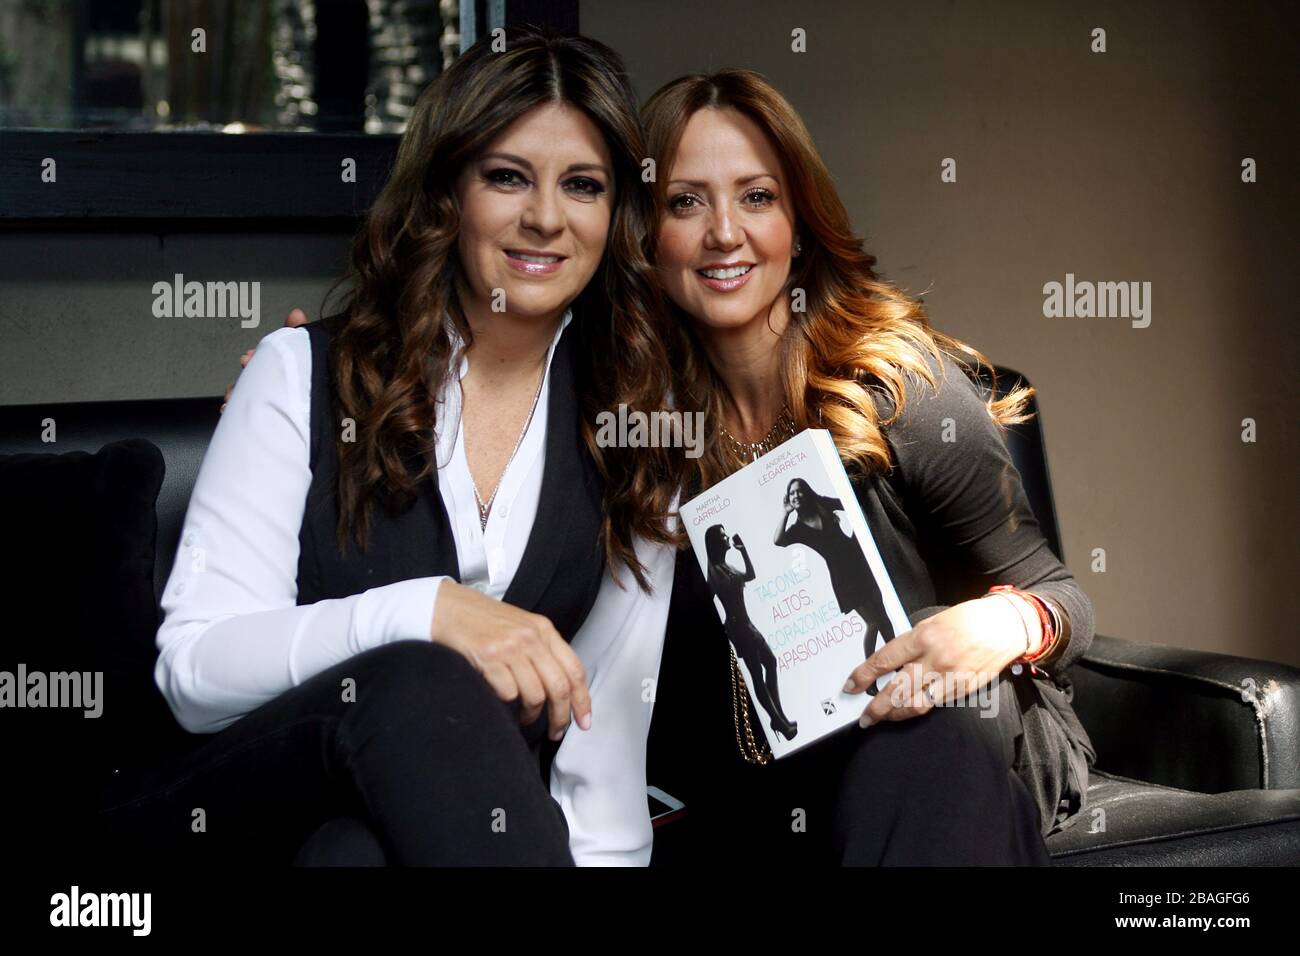 MEXIQUE, D.F. MEXIQUE – FEBRERO 06: Martha Carrillo y Andrea Legarreta promocionan su lipo titulado “Tacones altos, corazones apasionados”, que trata t Banque D'Images